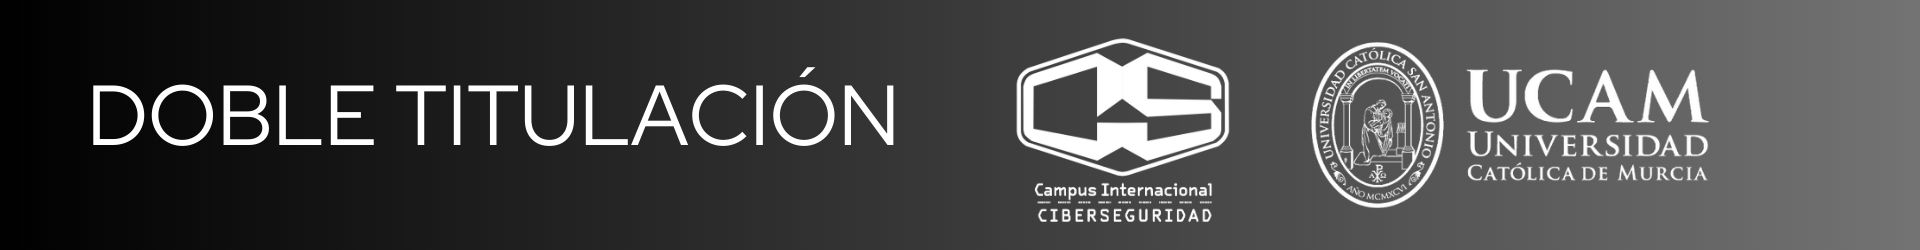 Doble titulación: UCAM, Campus Internacional de Ciberseguridad